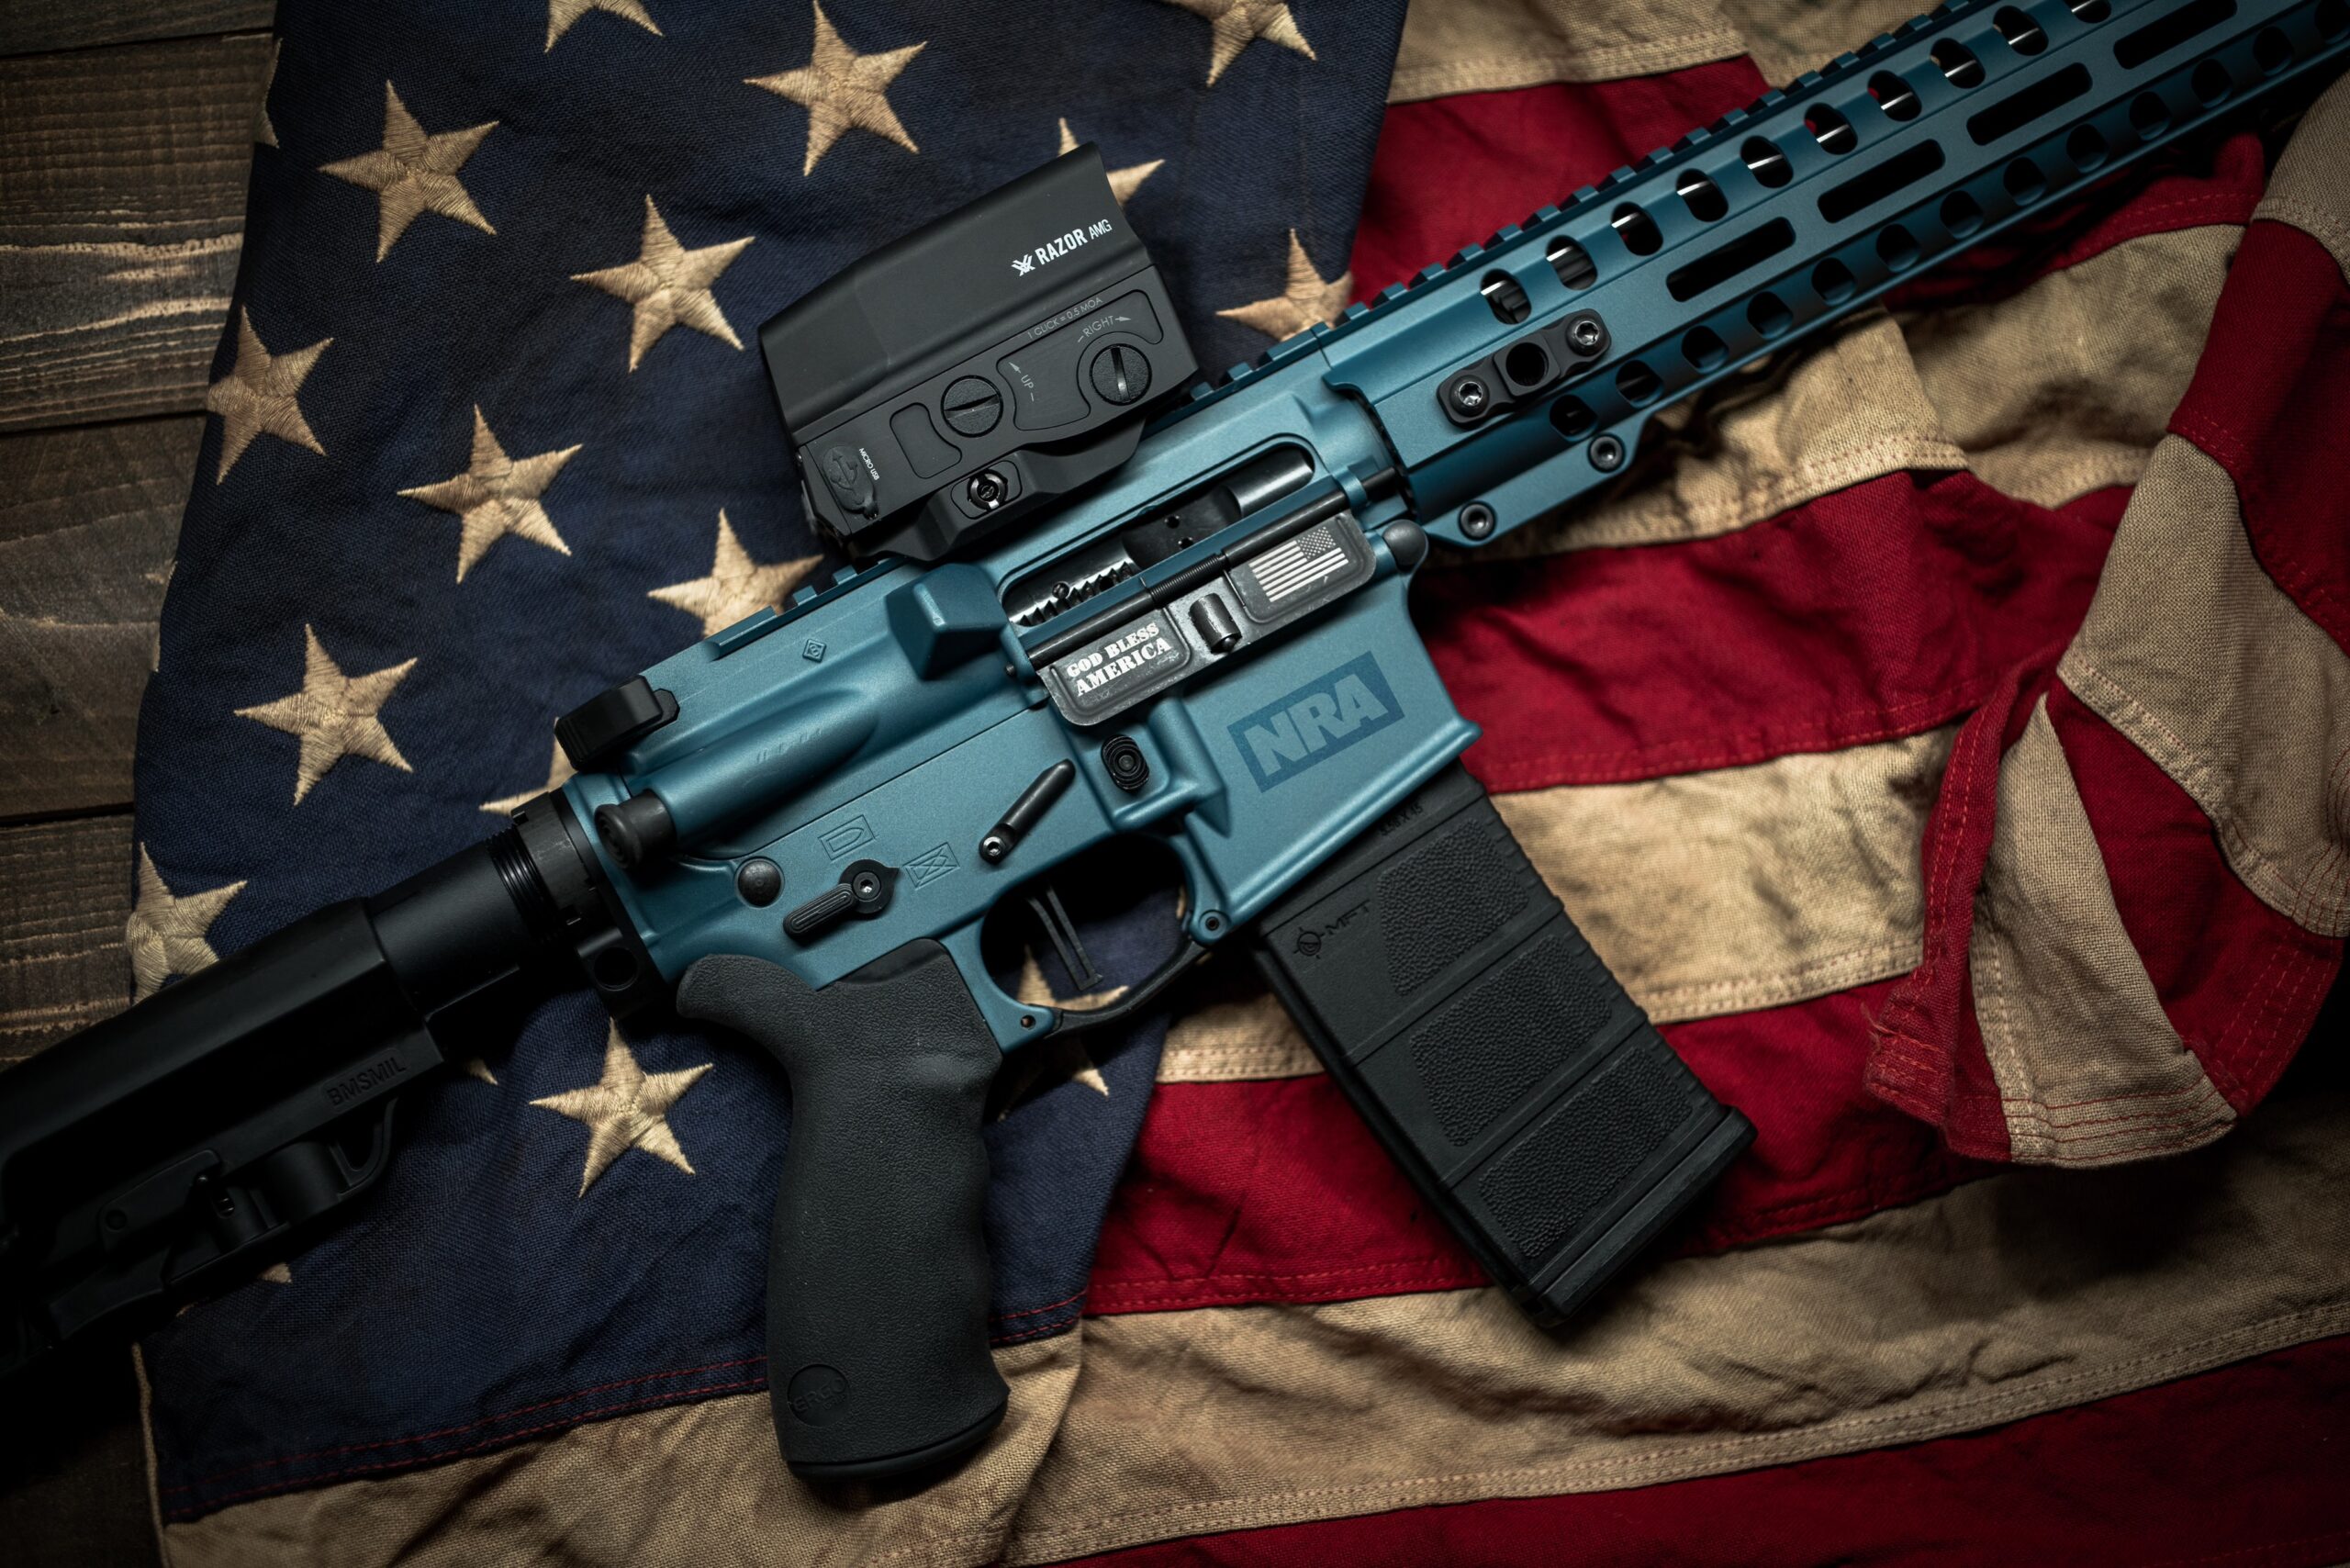 Corte estadounidense protege derecho de portar armas y declara ilegal regulación